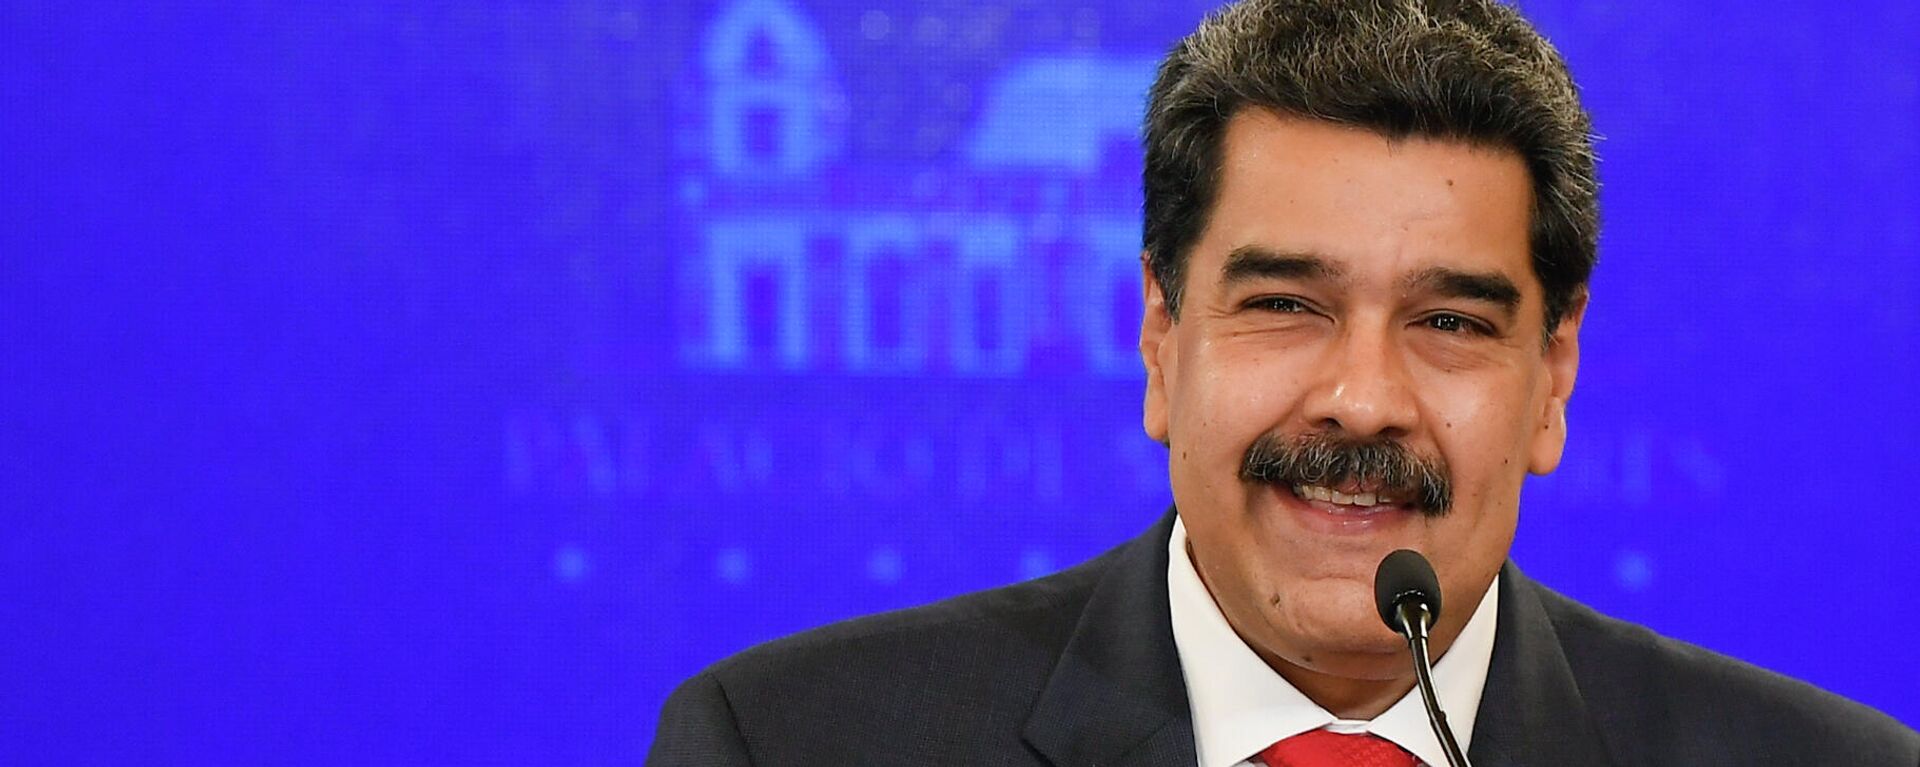 Nicolás Maduro, presidente de Venezuela - Sputnik Mundo, 1920, 25.06.2021